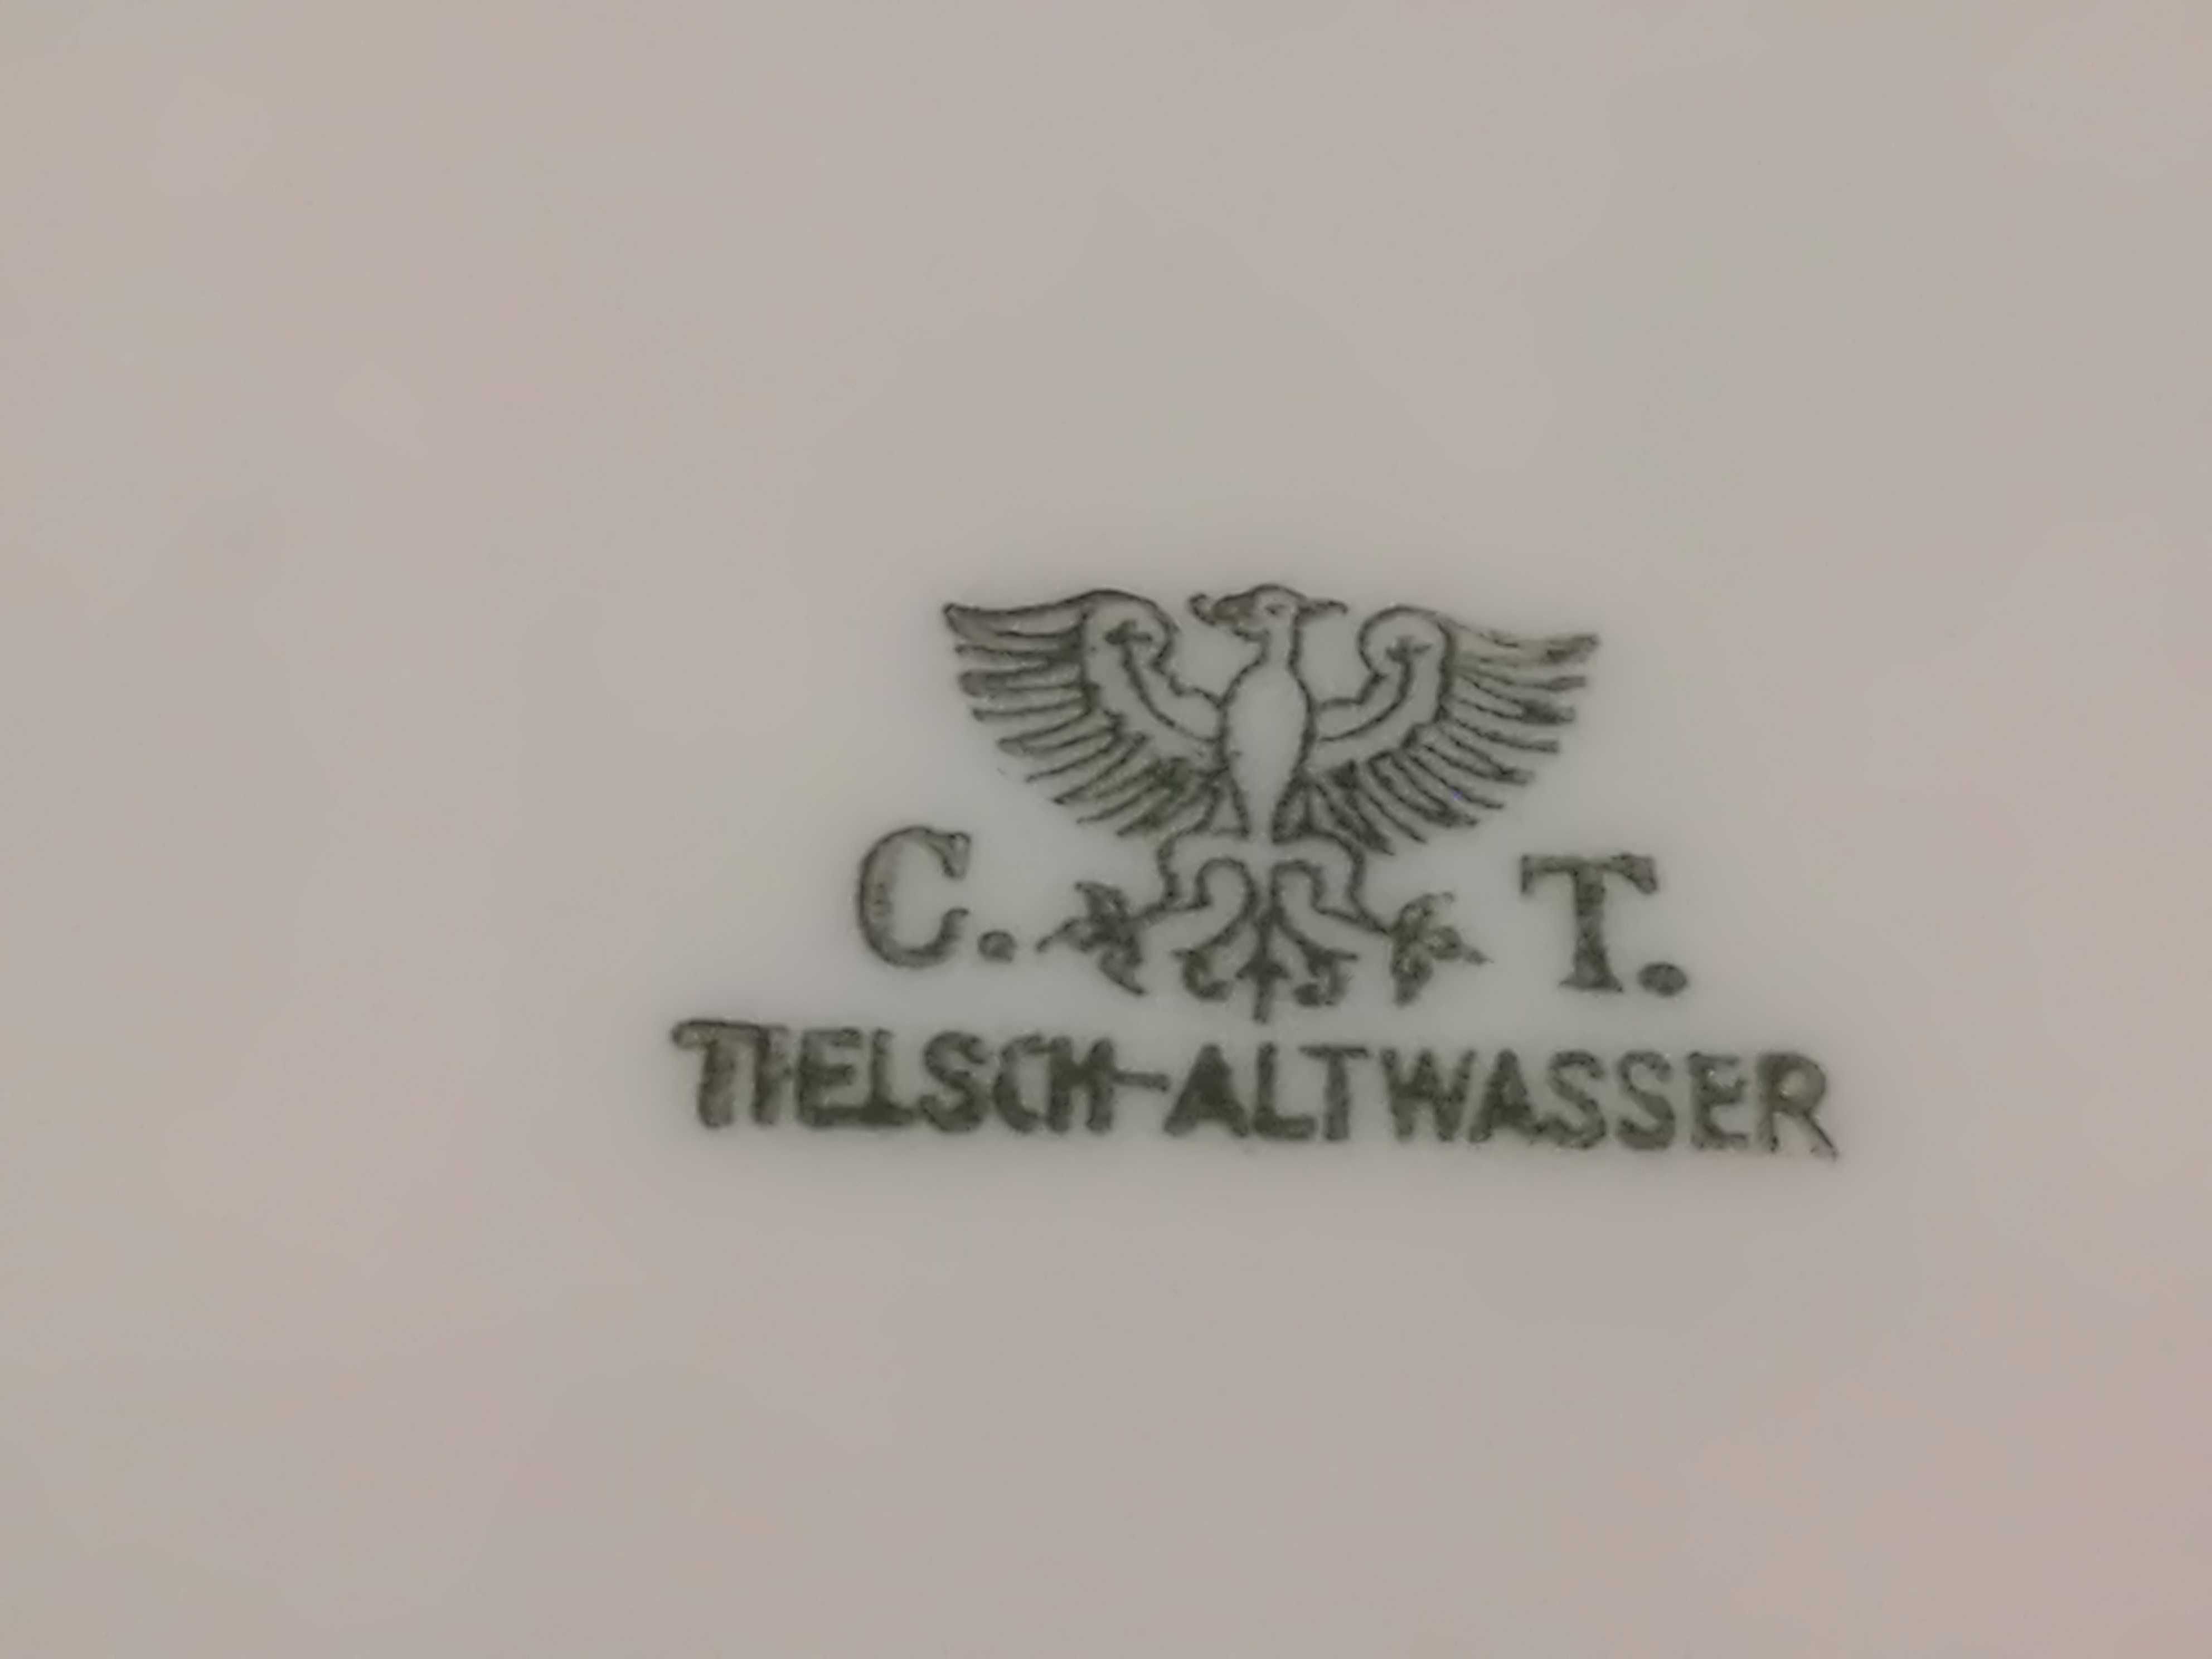 Salaterka Porcelana Wałbrzych C.T. Tielsch Altwasser stara miska